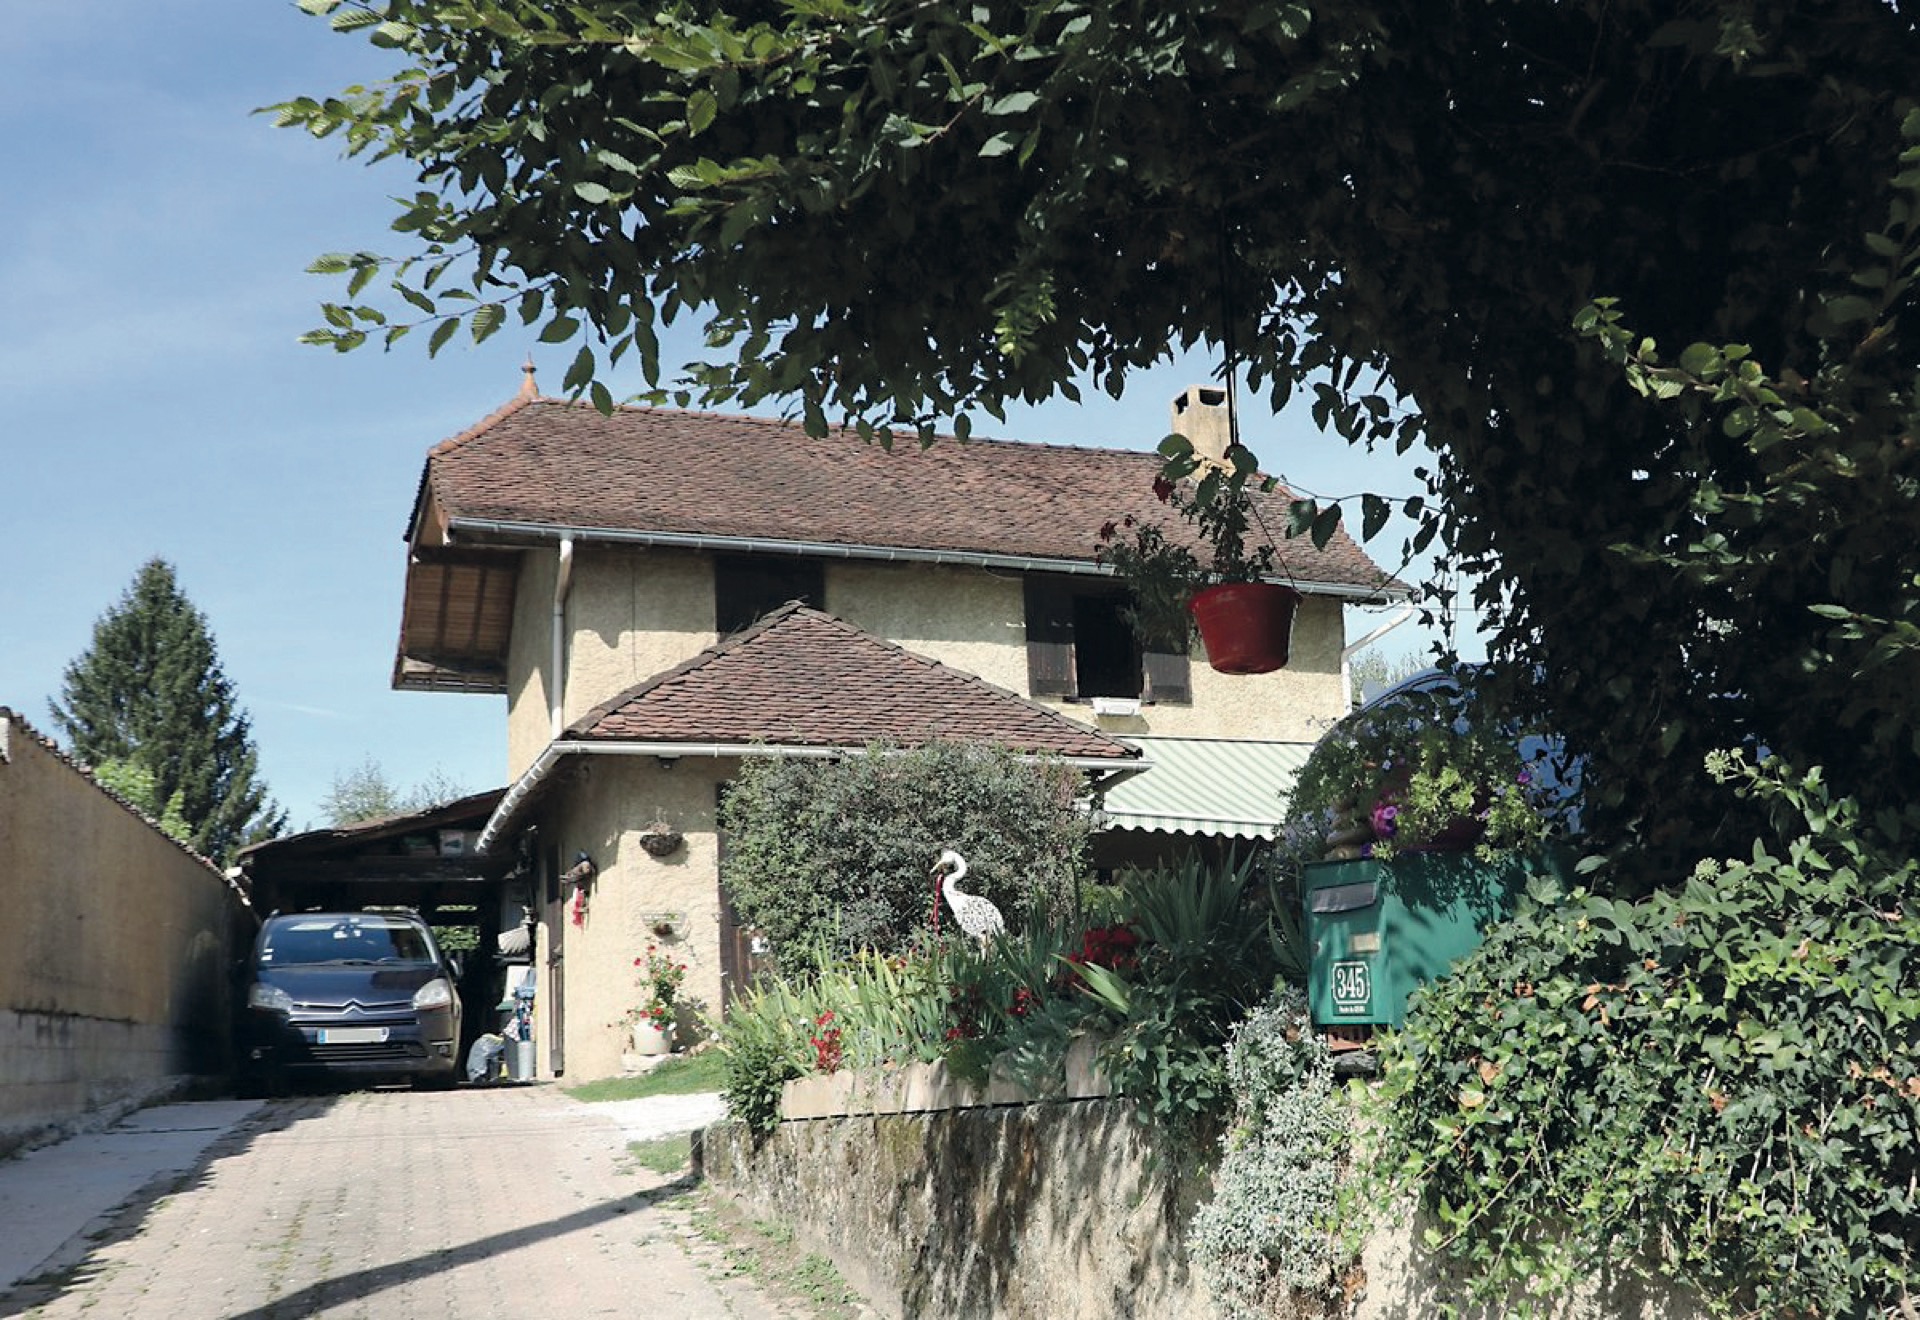 La casa donde vivía Nordhal Lelandais con sus padres.